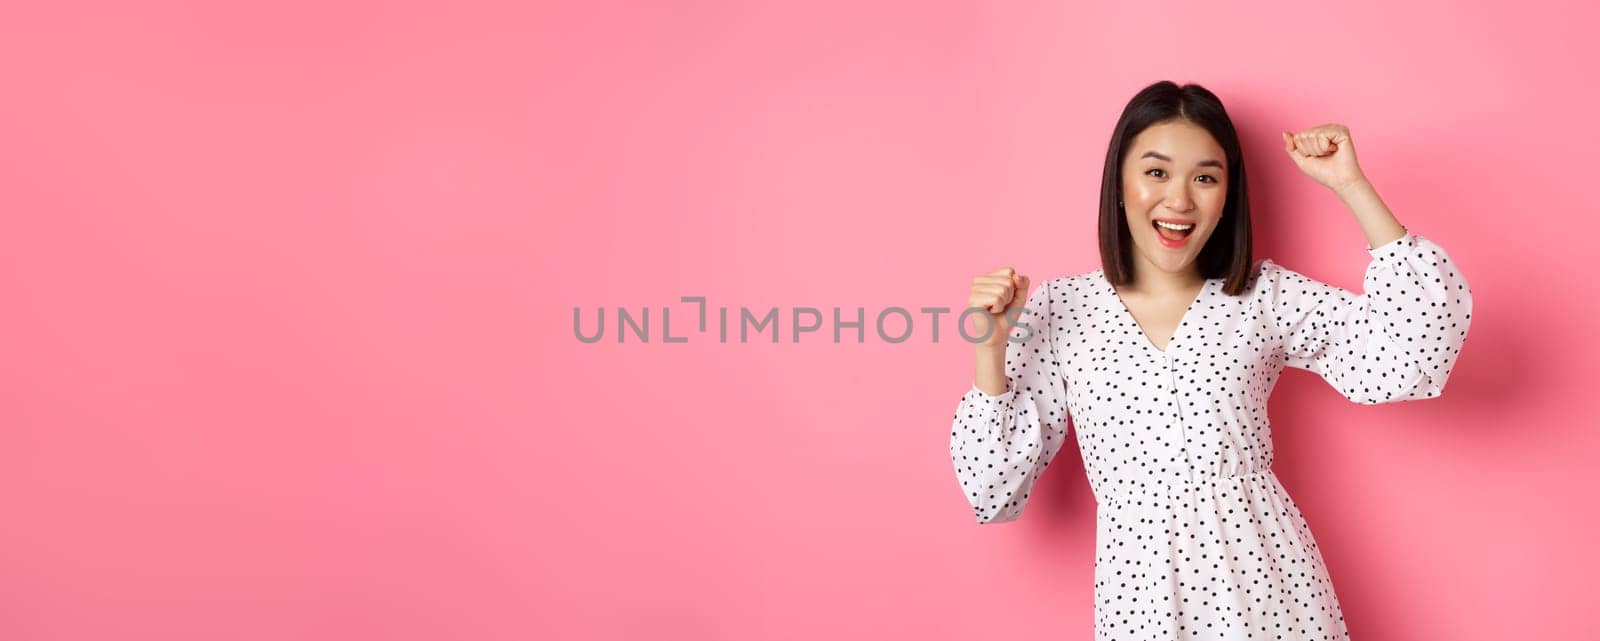 Beautiful korean woman dancing and having fun, smiling happy at camera, posing against pink background.